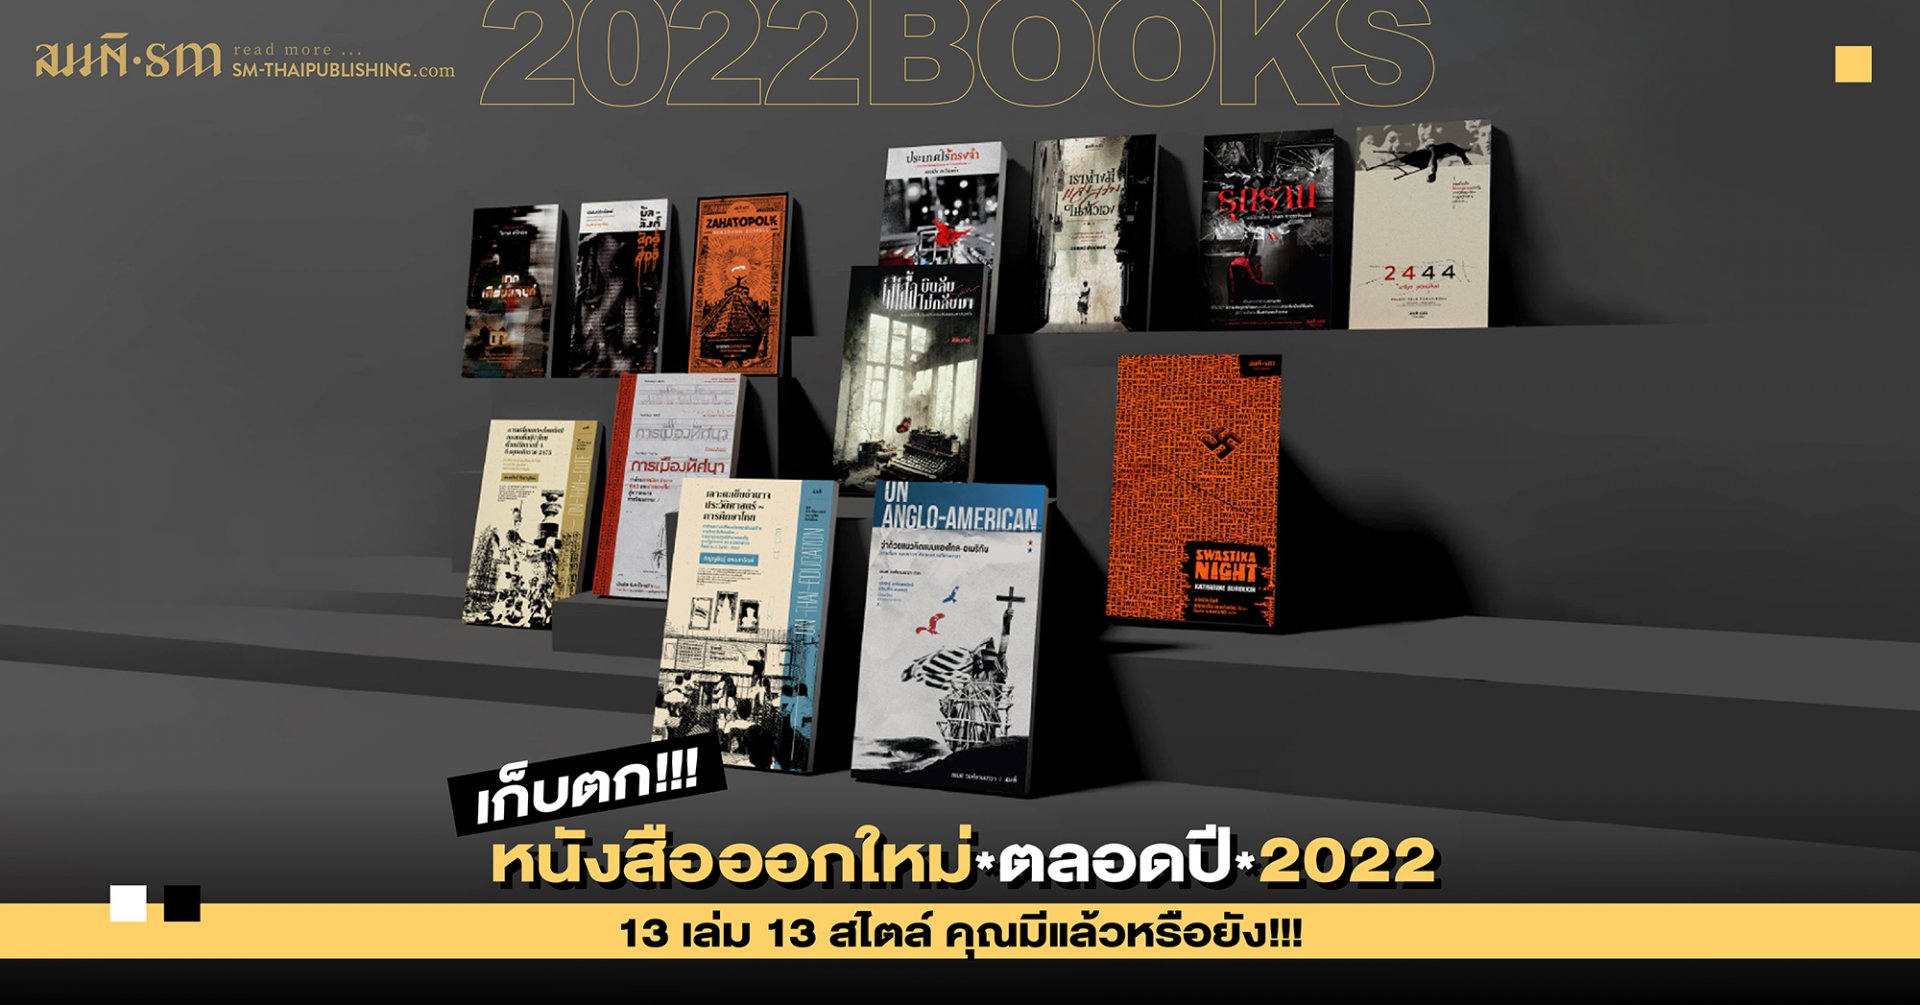 เก็บตกหนังสือออกใหม่ตลอดปี 2022